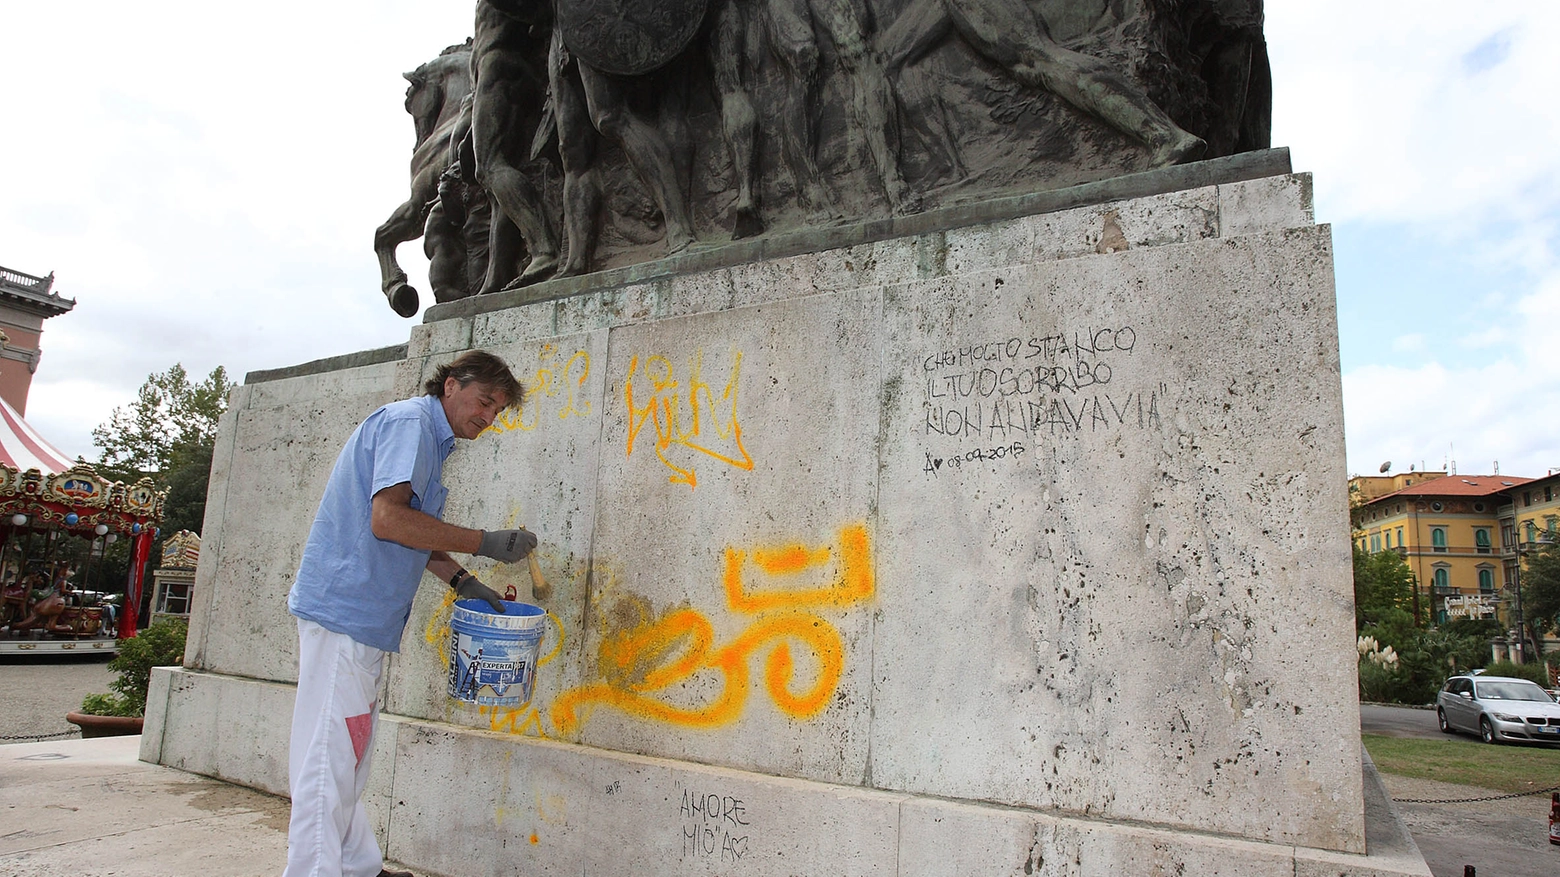 Polemica sui vandalismi in città